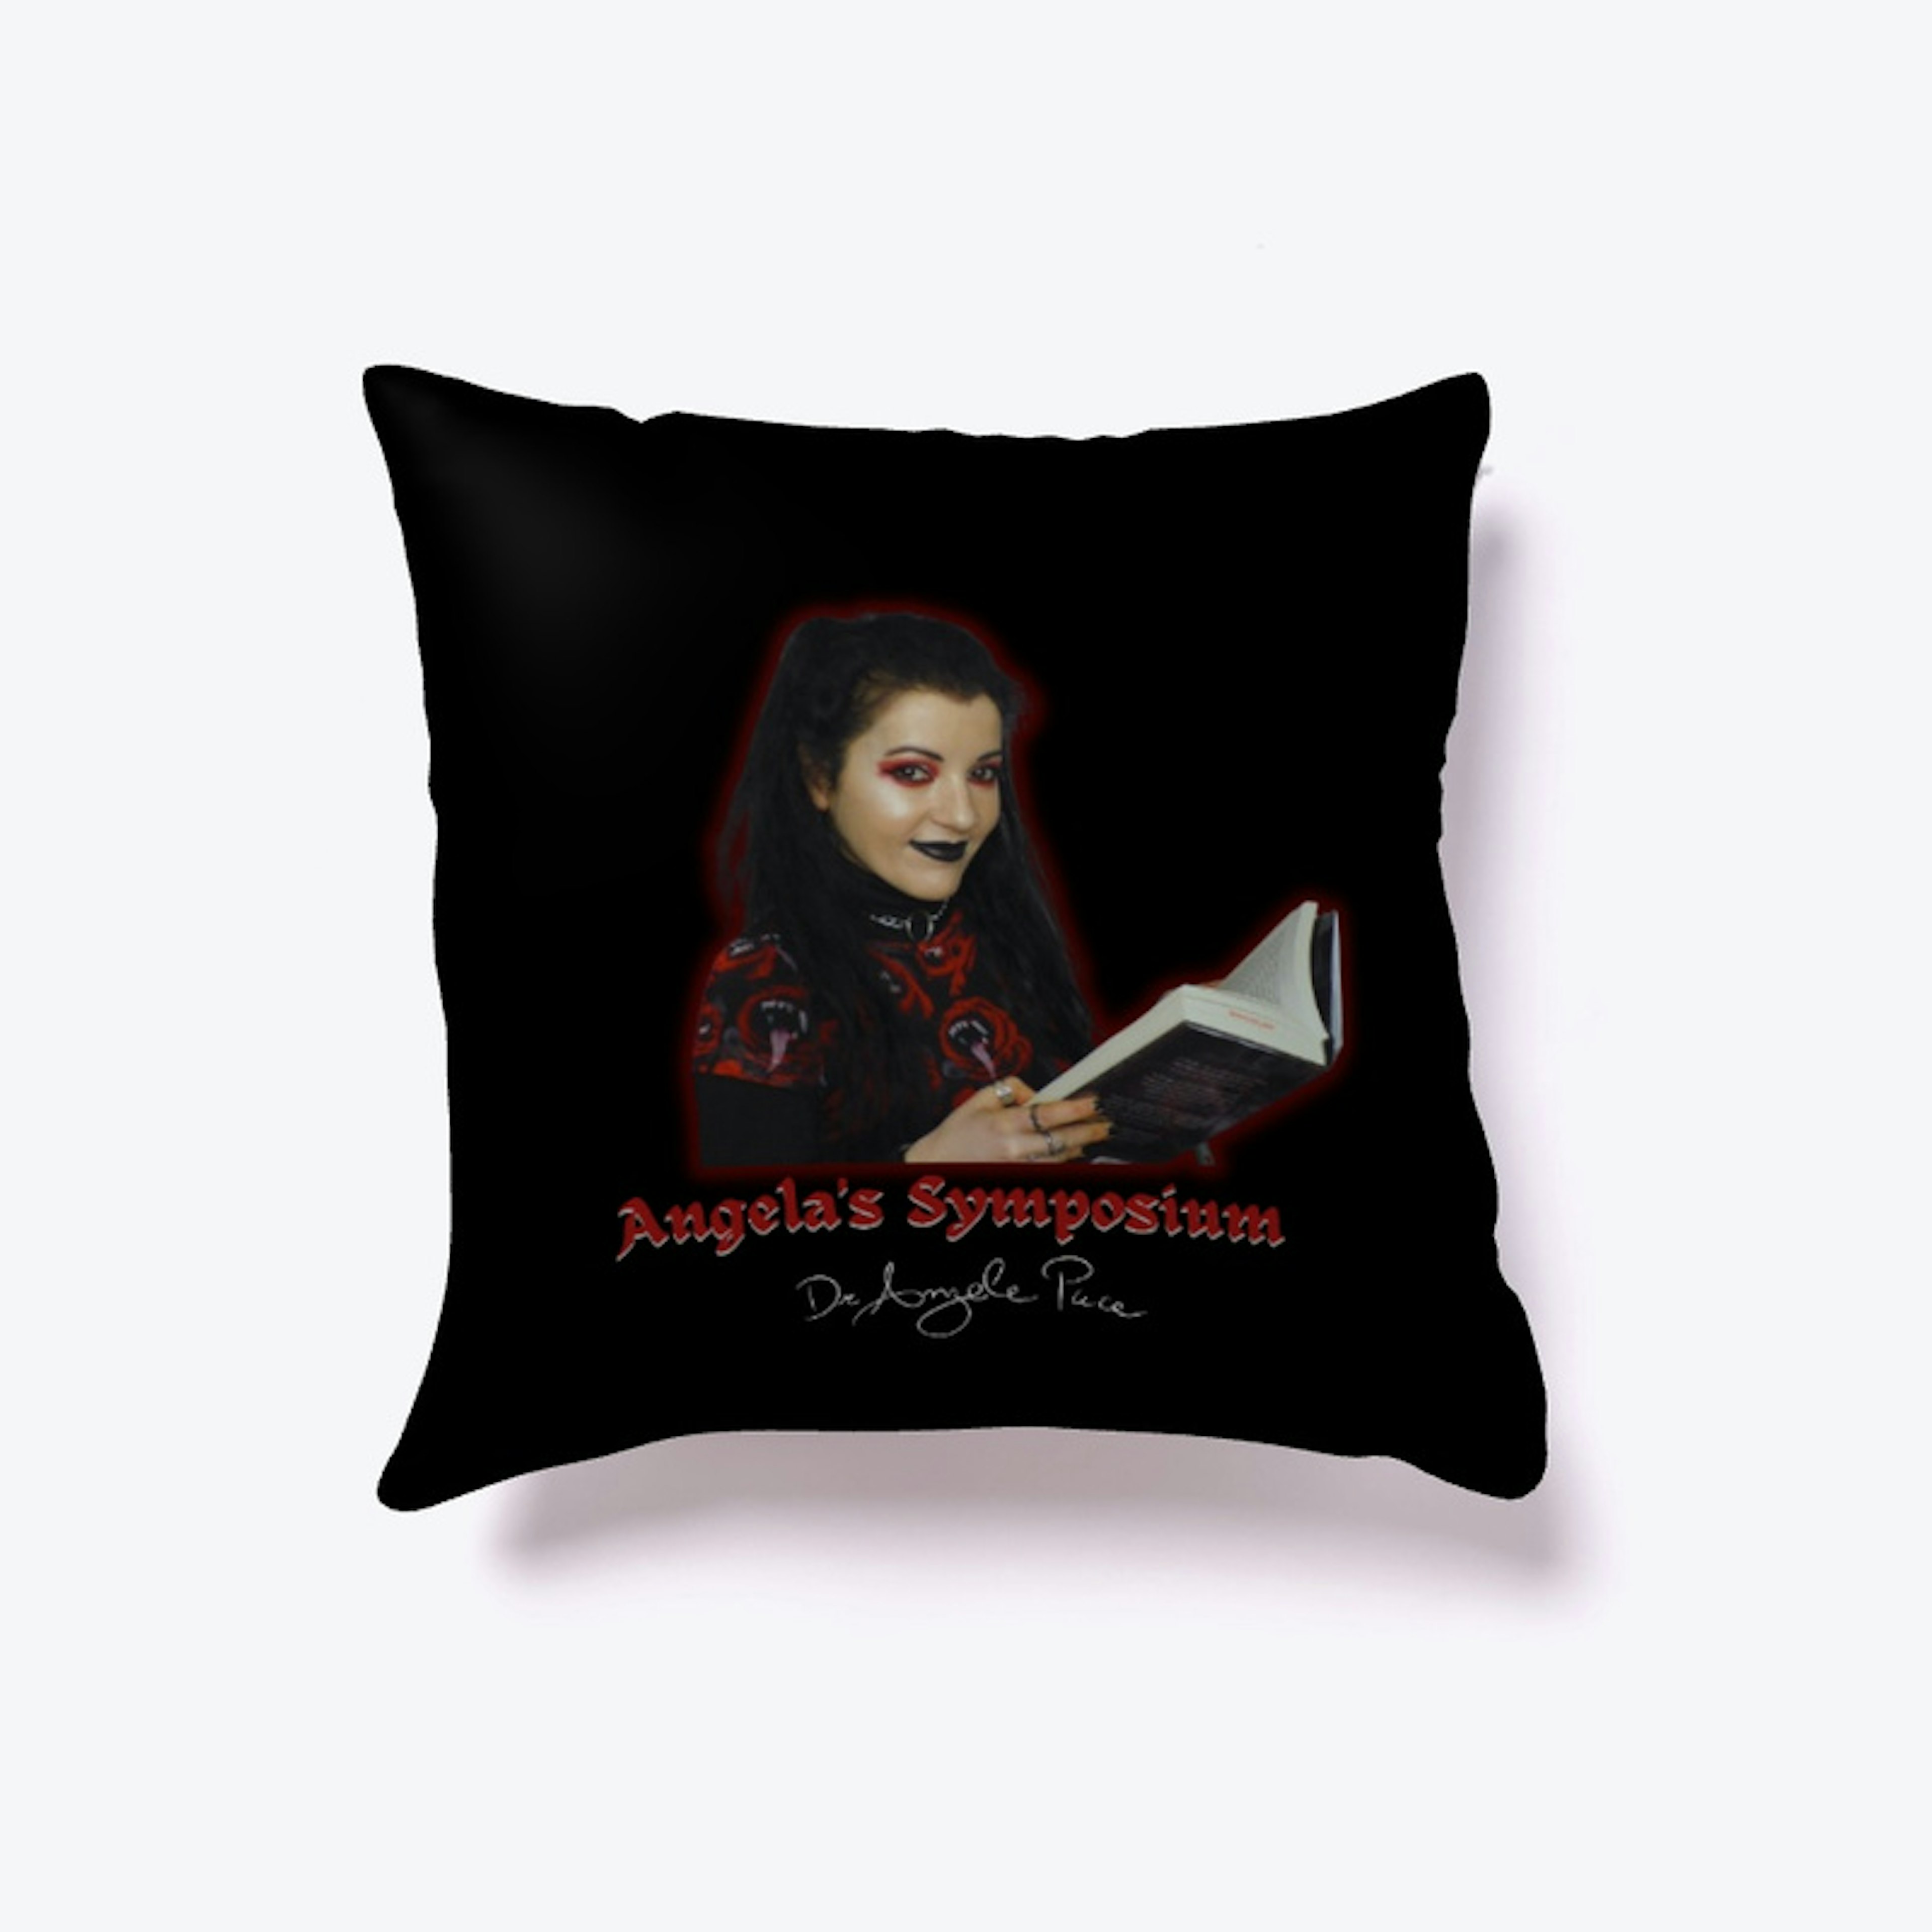 Angela's Symposium Merchandise